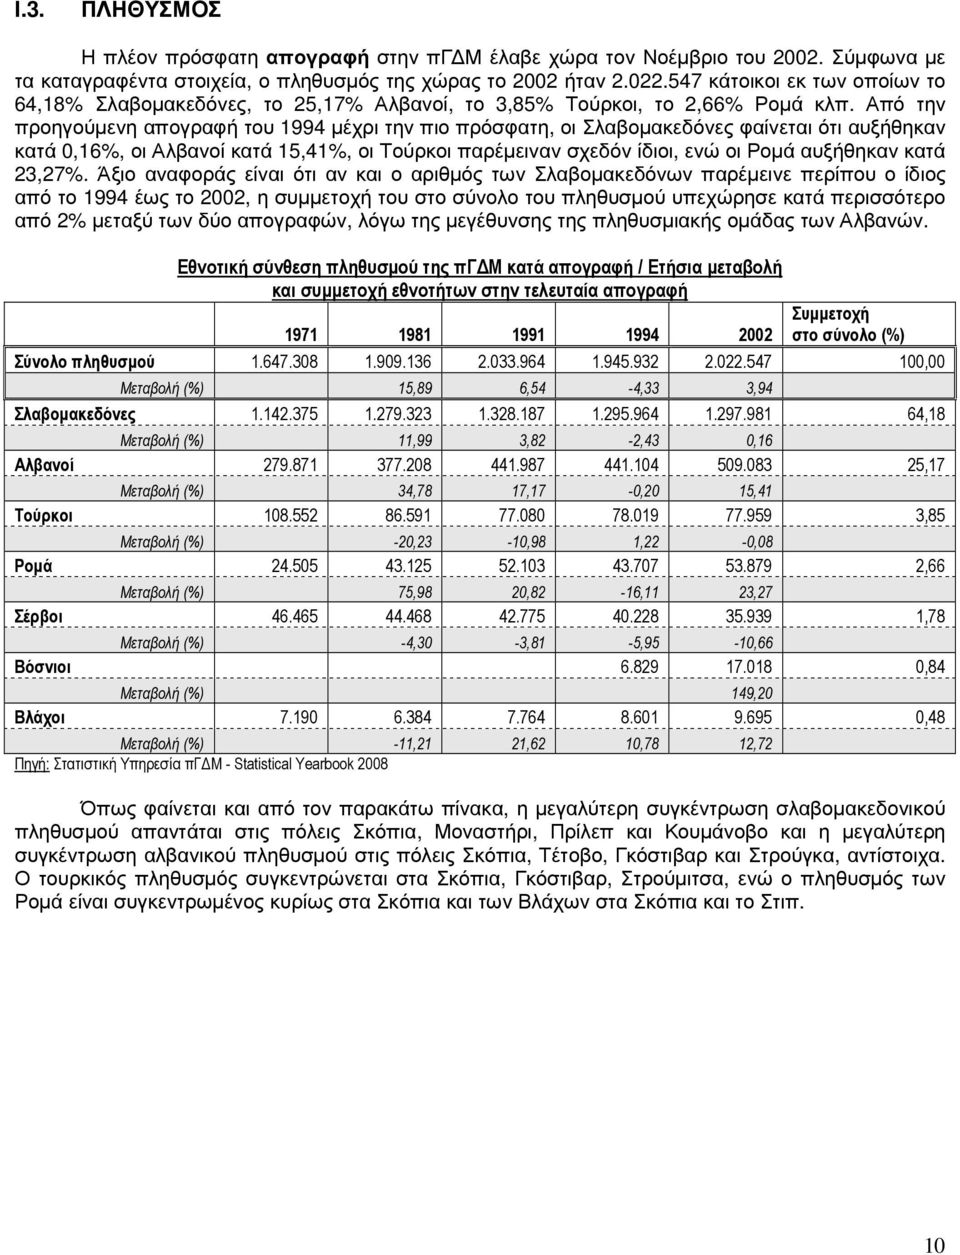 Από την προηγούµενη απογραφή του 1994 µέχρι την πιο πρόσφατη, οι Σλαβοµακεδόνες φαίνεται ότι αυξήθηκαν κατά 0,16%, οι Αλβανοί κατά 15,41%, οι Τούρκοι παρέµειναν σχεδόν ίδιοι, ενώ οι Ροµά αυξήθηκαν